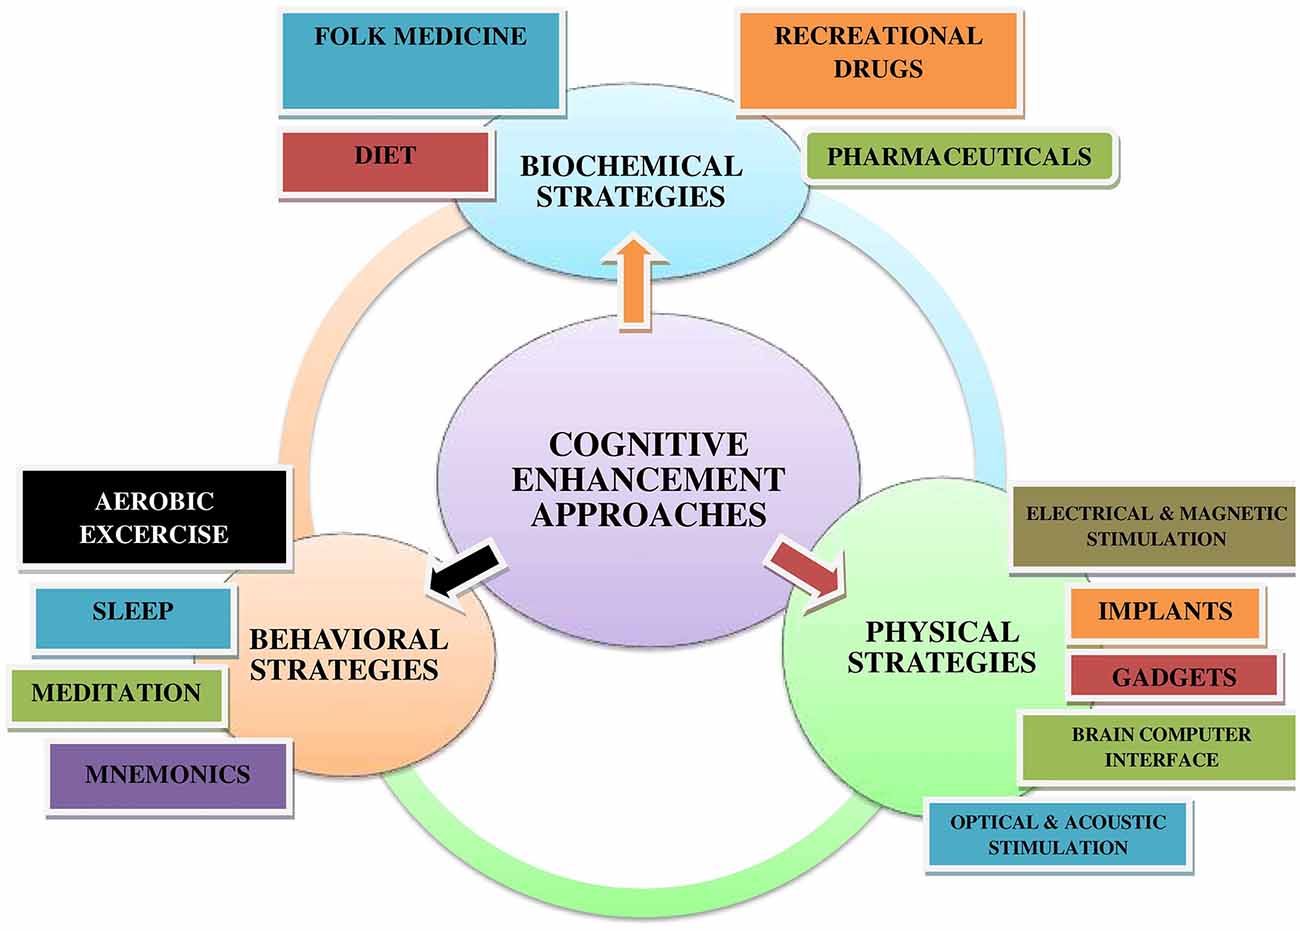 Cognitive enhancement strategies